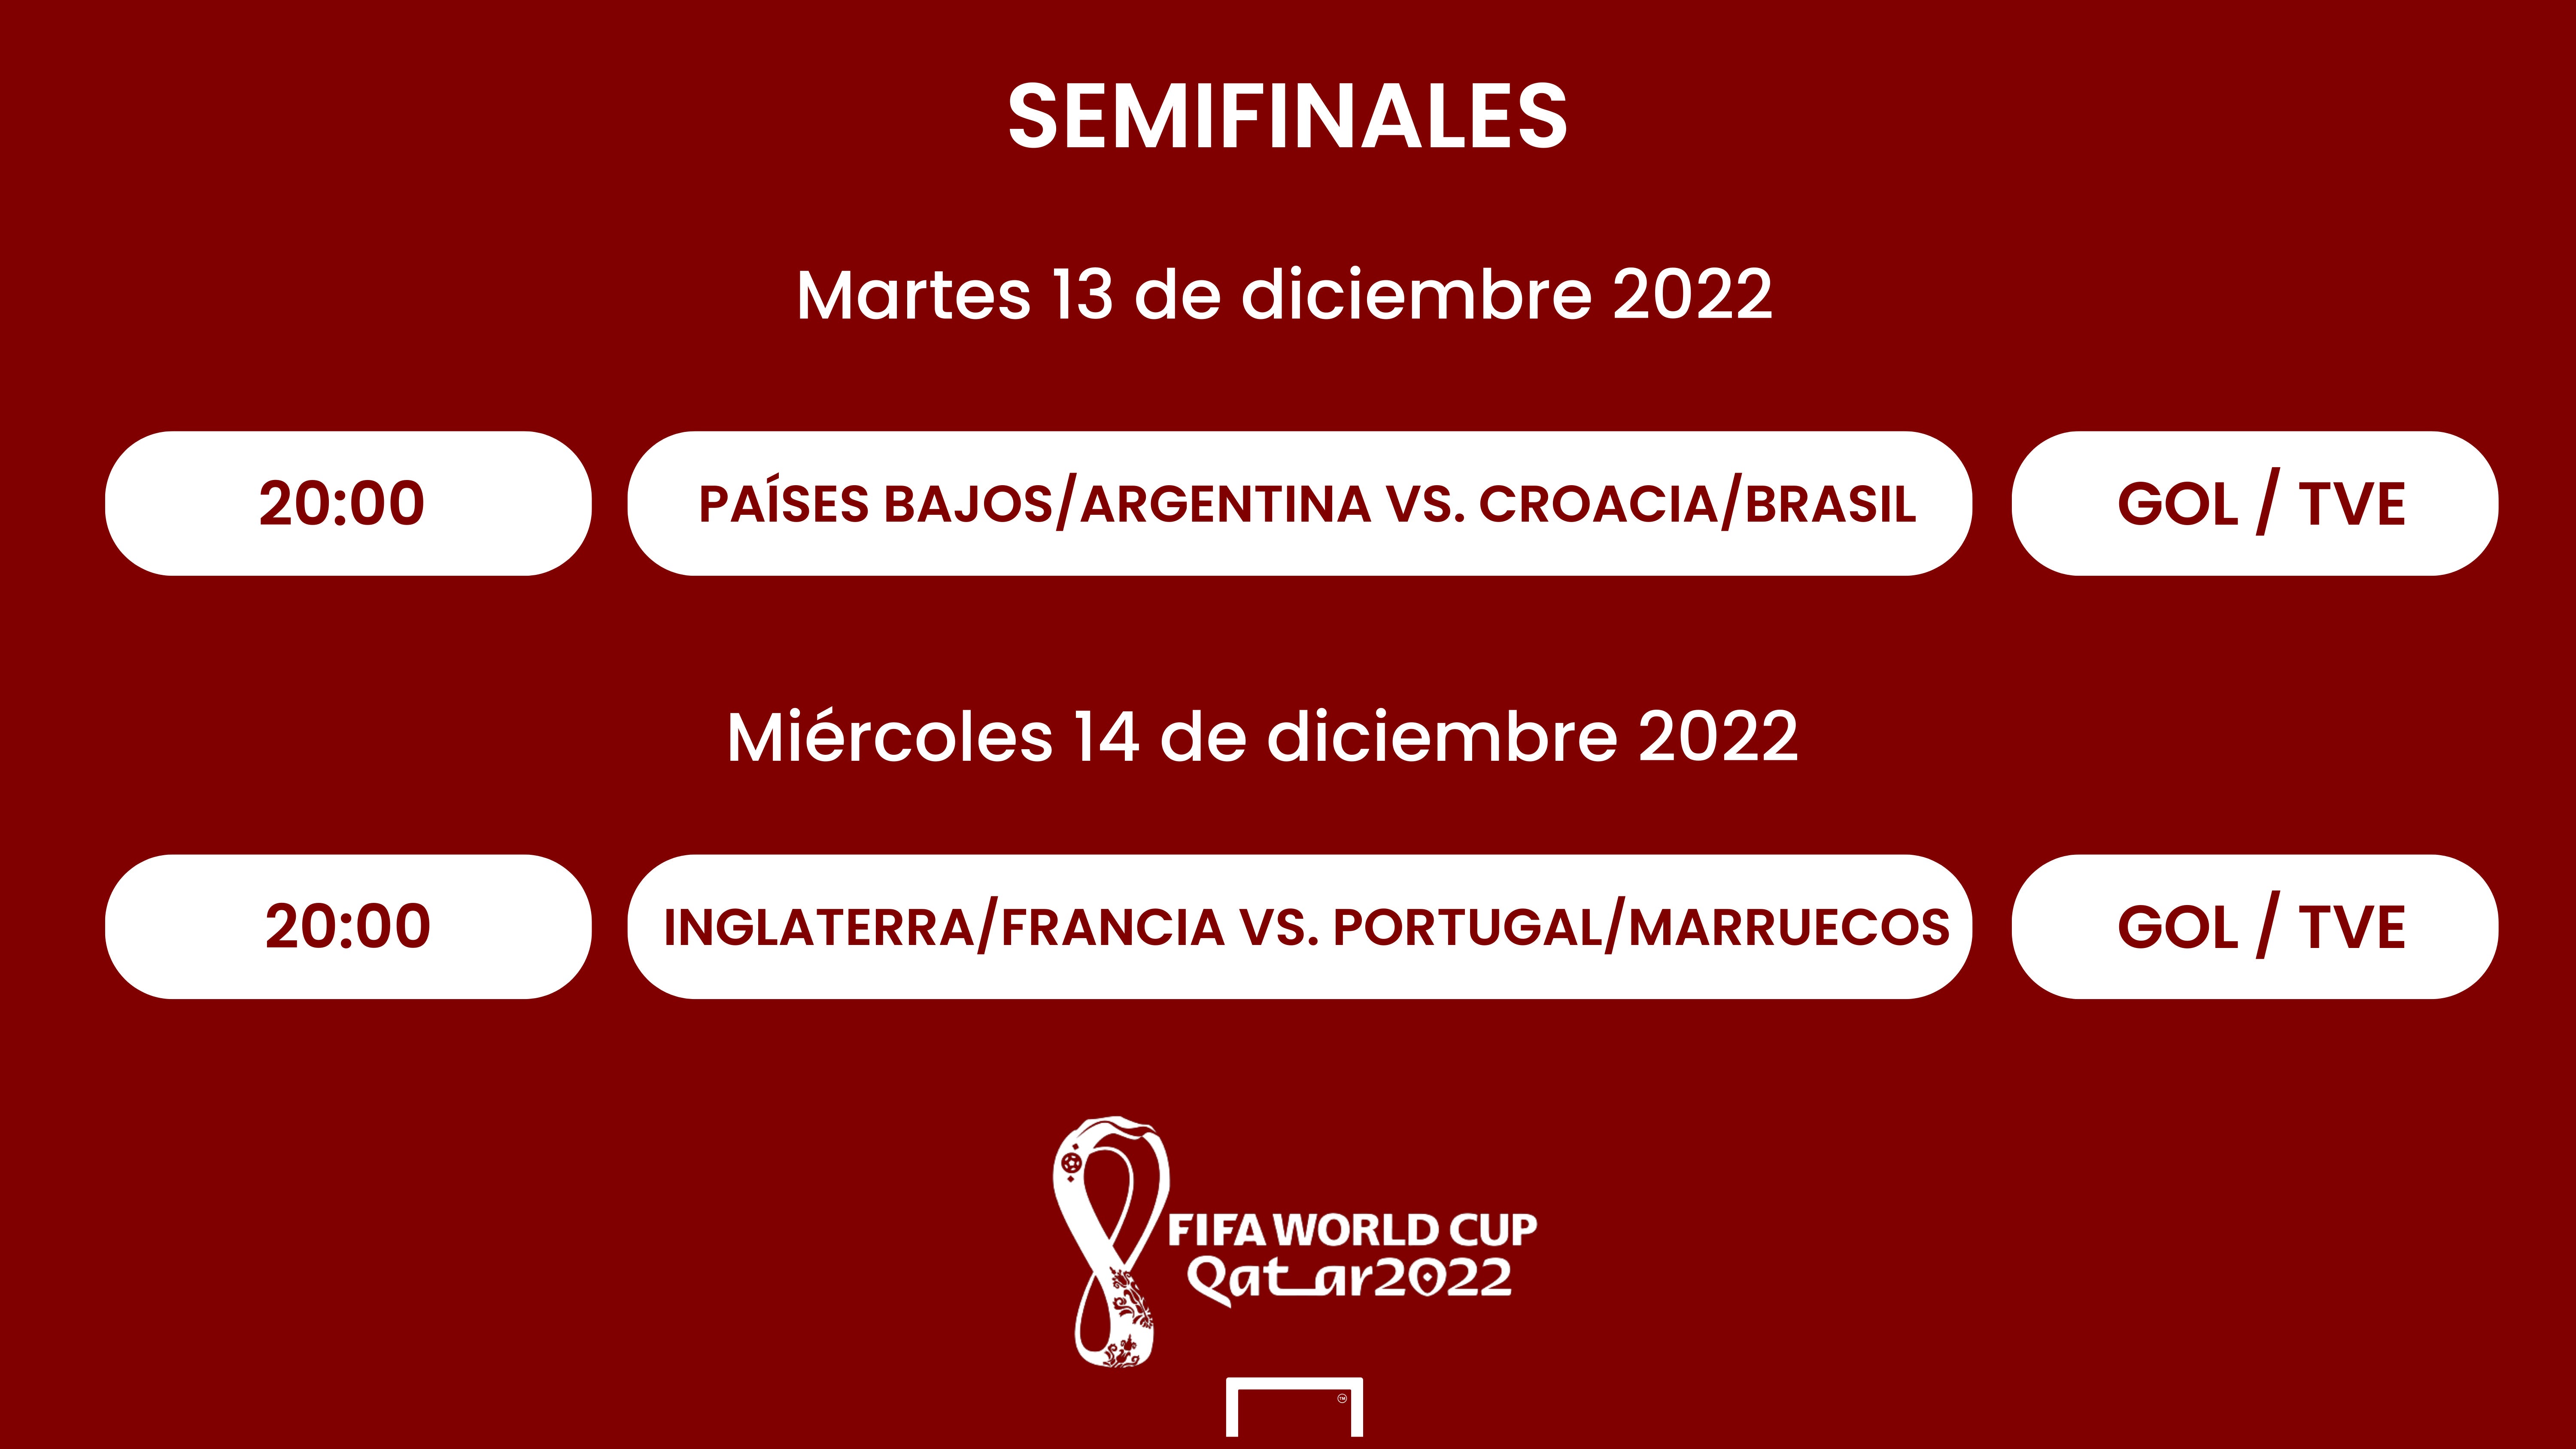 Semifinales del Mundial 2022: Cuándo son, selecciones clasificadas, partidos, fechas, horarios y resultados | Goal.com Espana